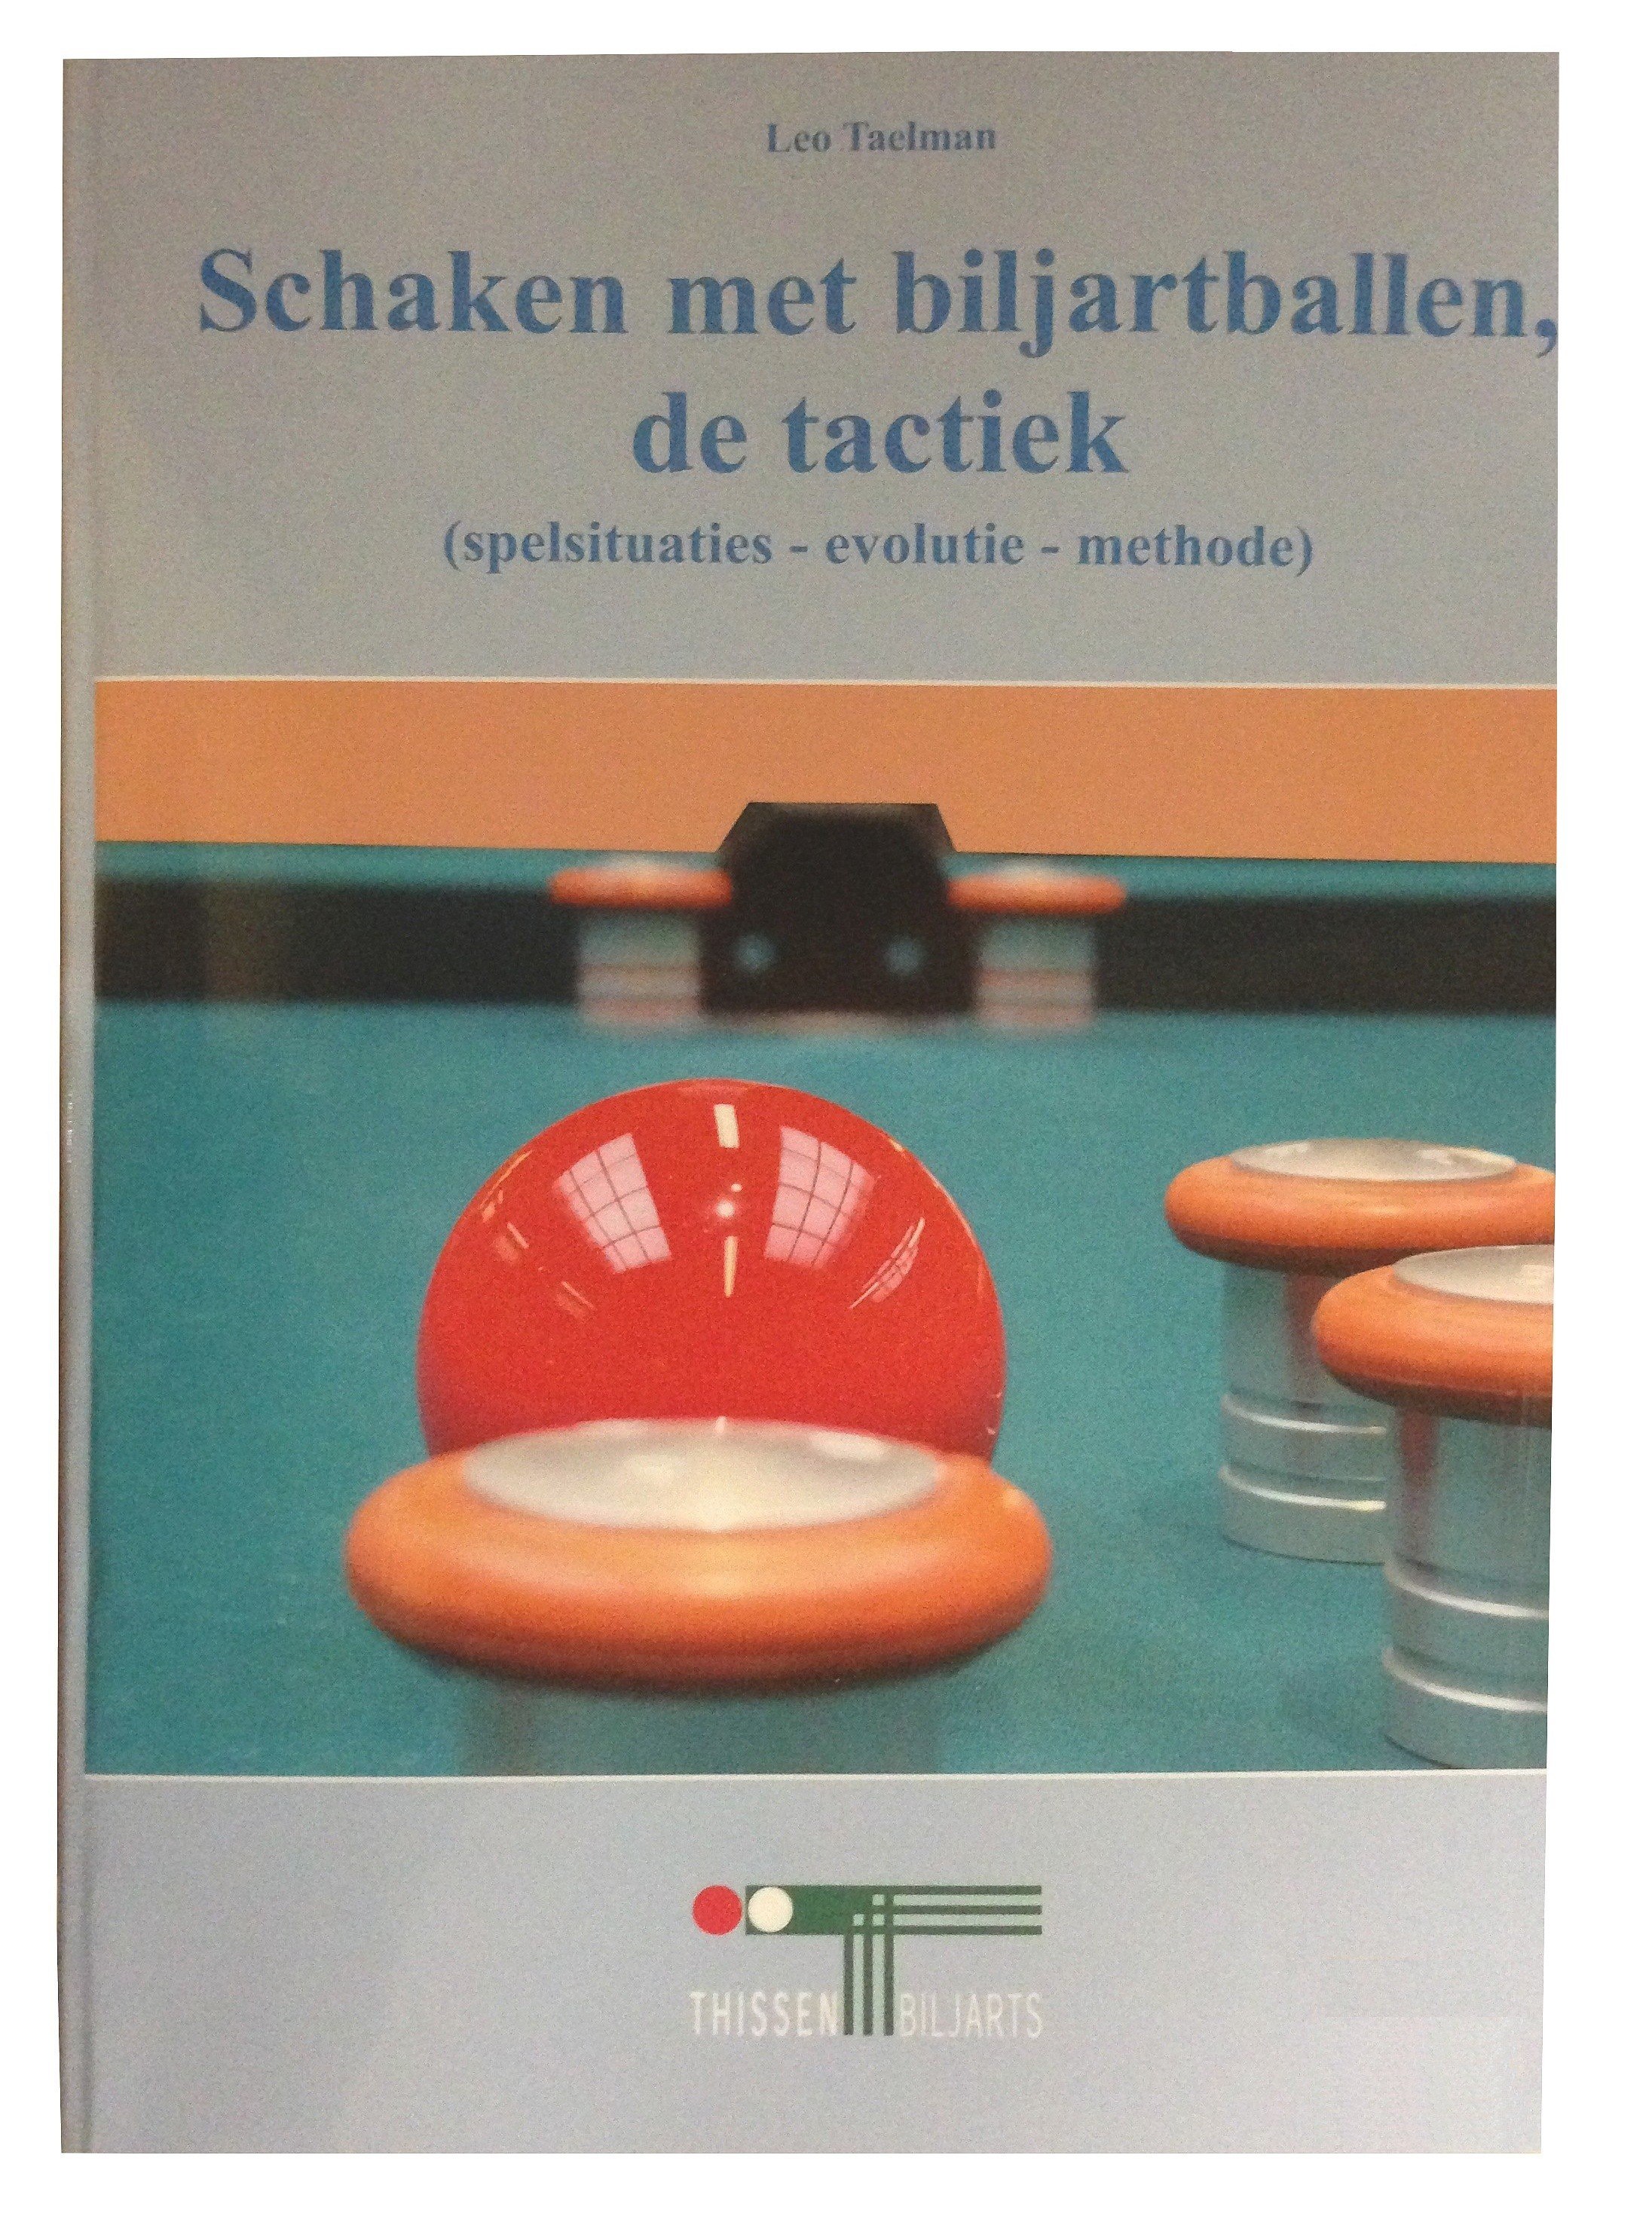 Boek Golfbiljart - Met De Tactiek - Leo Taelman kopen Amusement.be